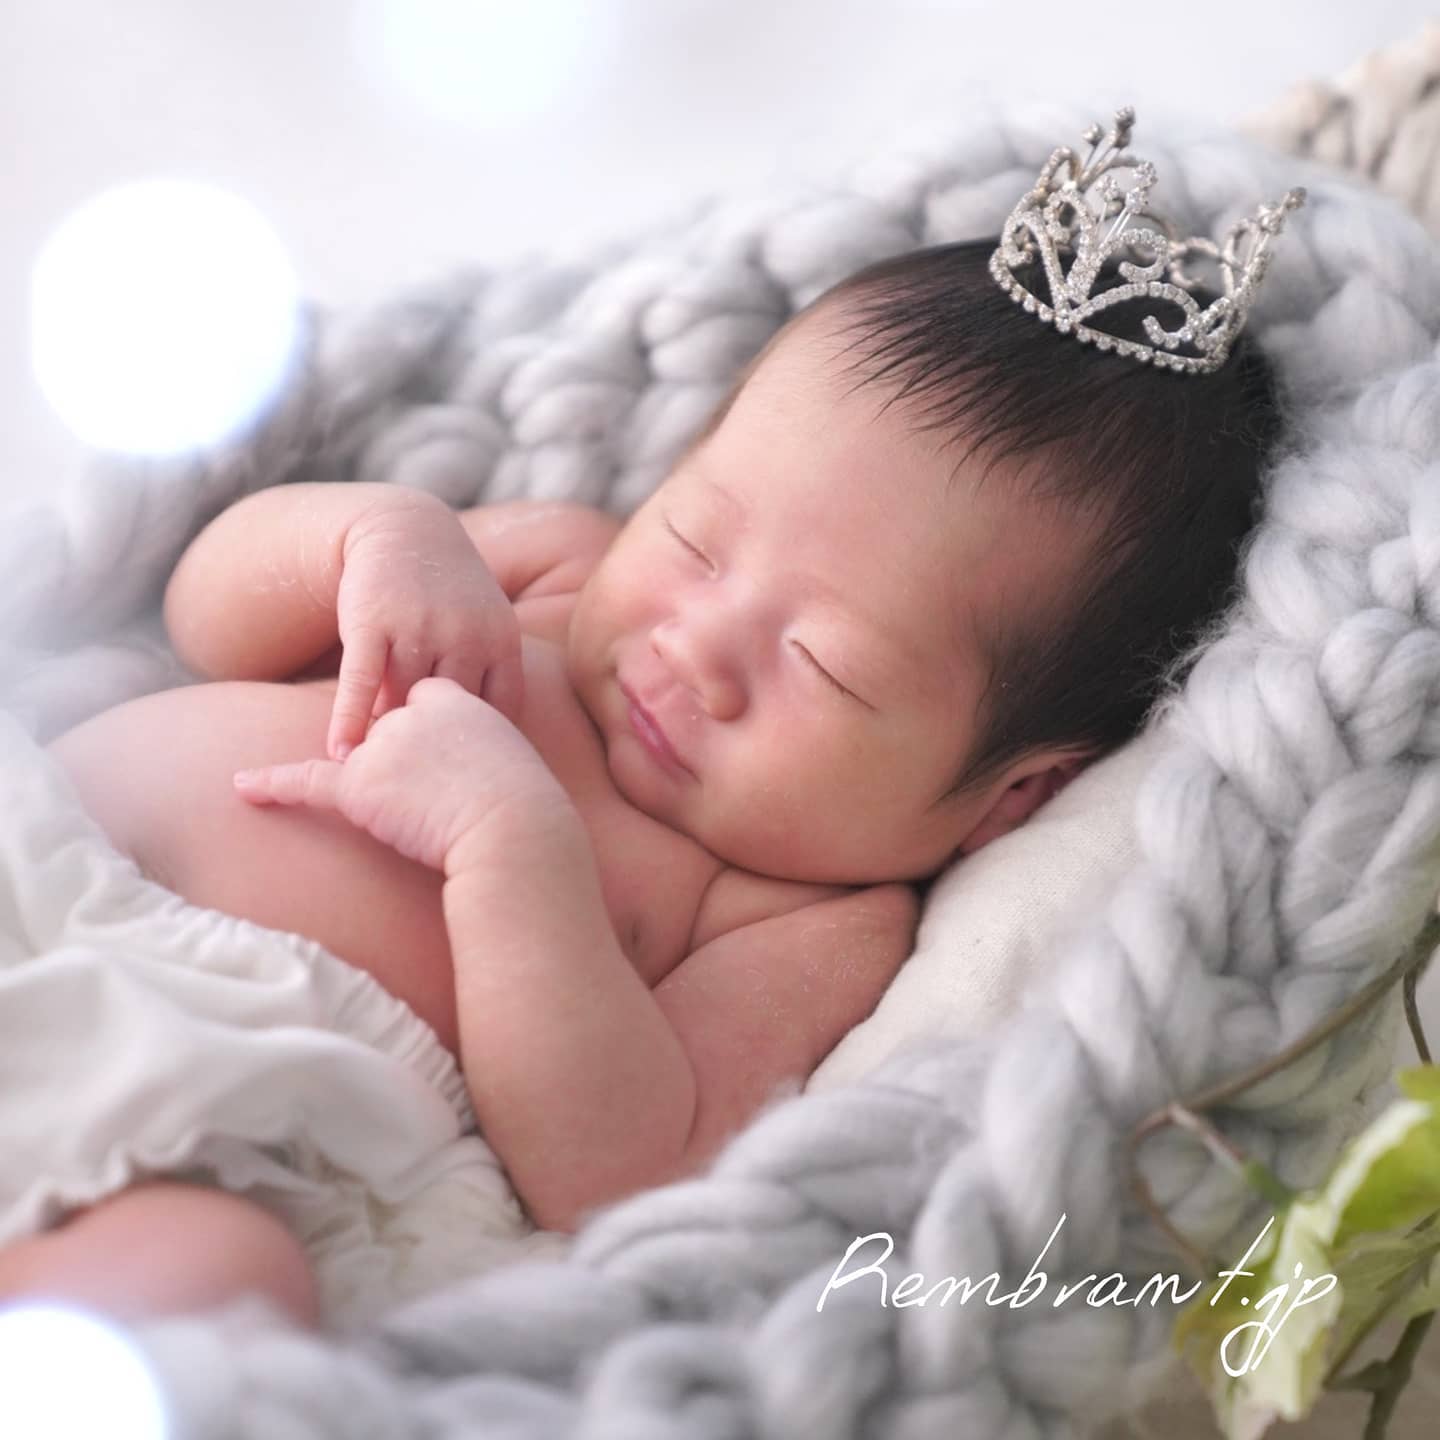 可愛すぎる、天使の微笑💕　新生児期の赤ちゃんでこの表情が撮れると、とっても嬉し…